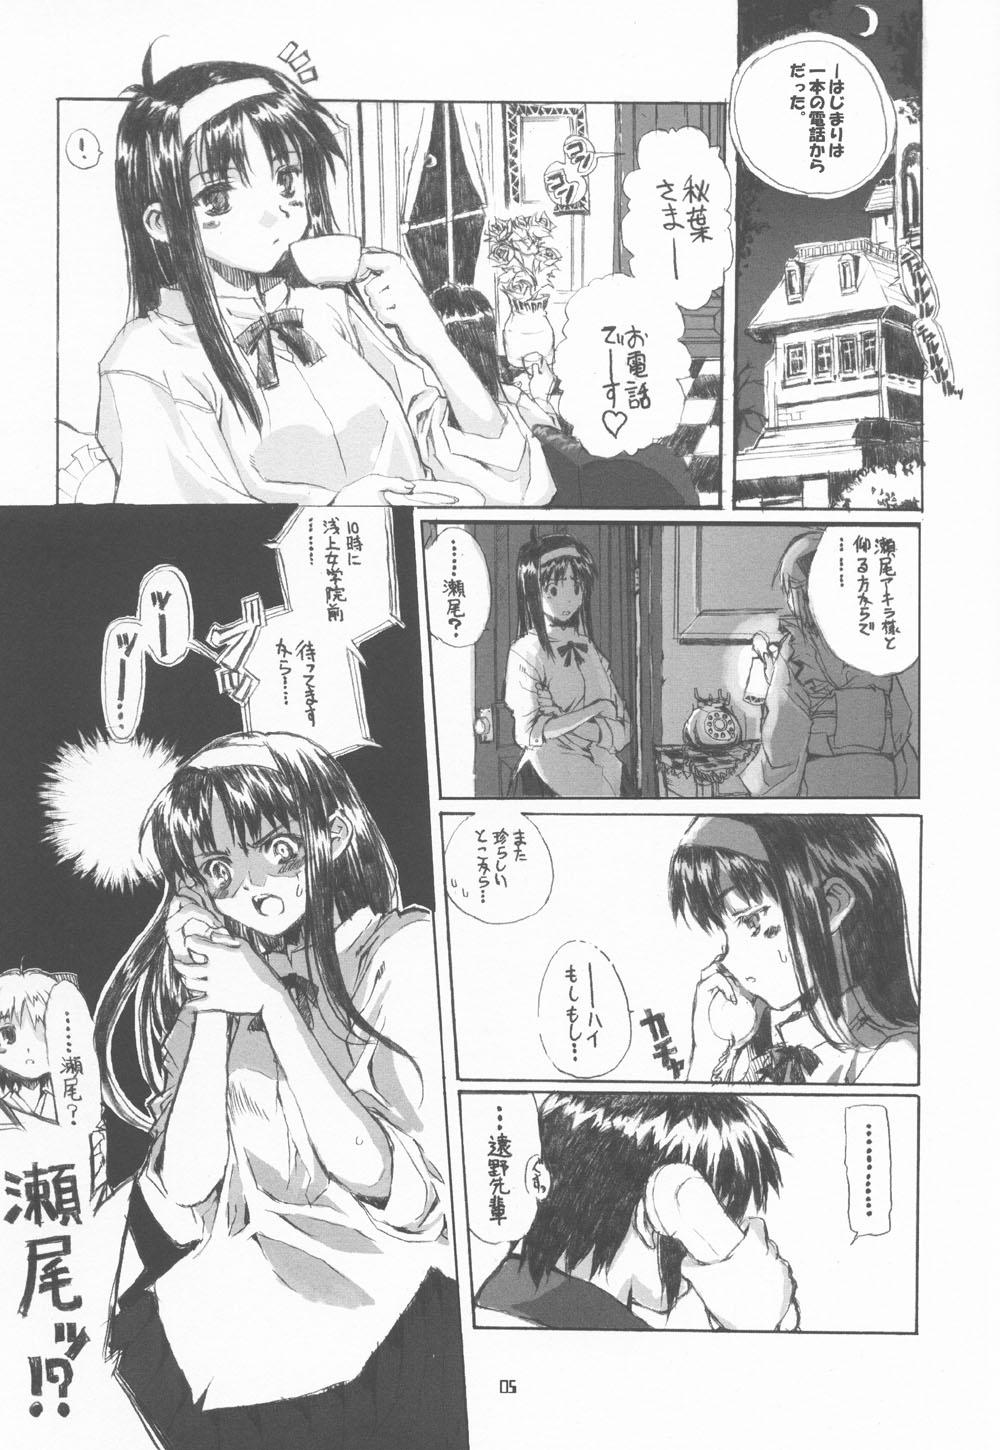 Hd Porn Neko-bus Tei no Hon vol.4 - Tsukihime Mofos - Page 4